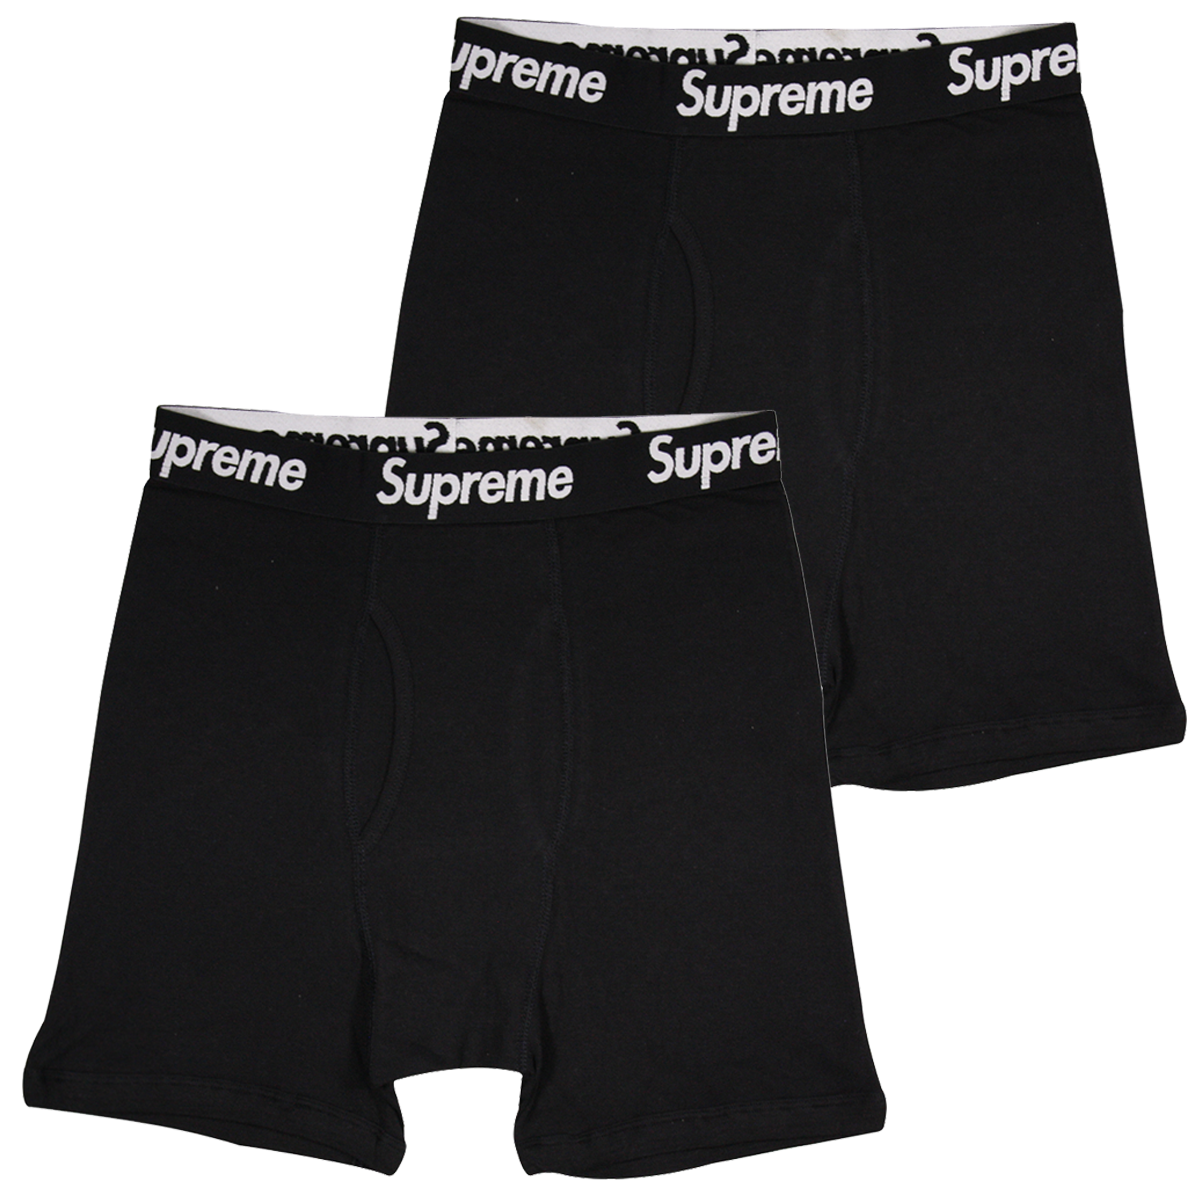 Supreme x Hanes Men's 100% Authentic 2 Pack Black Boxer Briefs